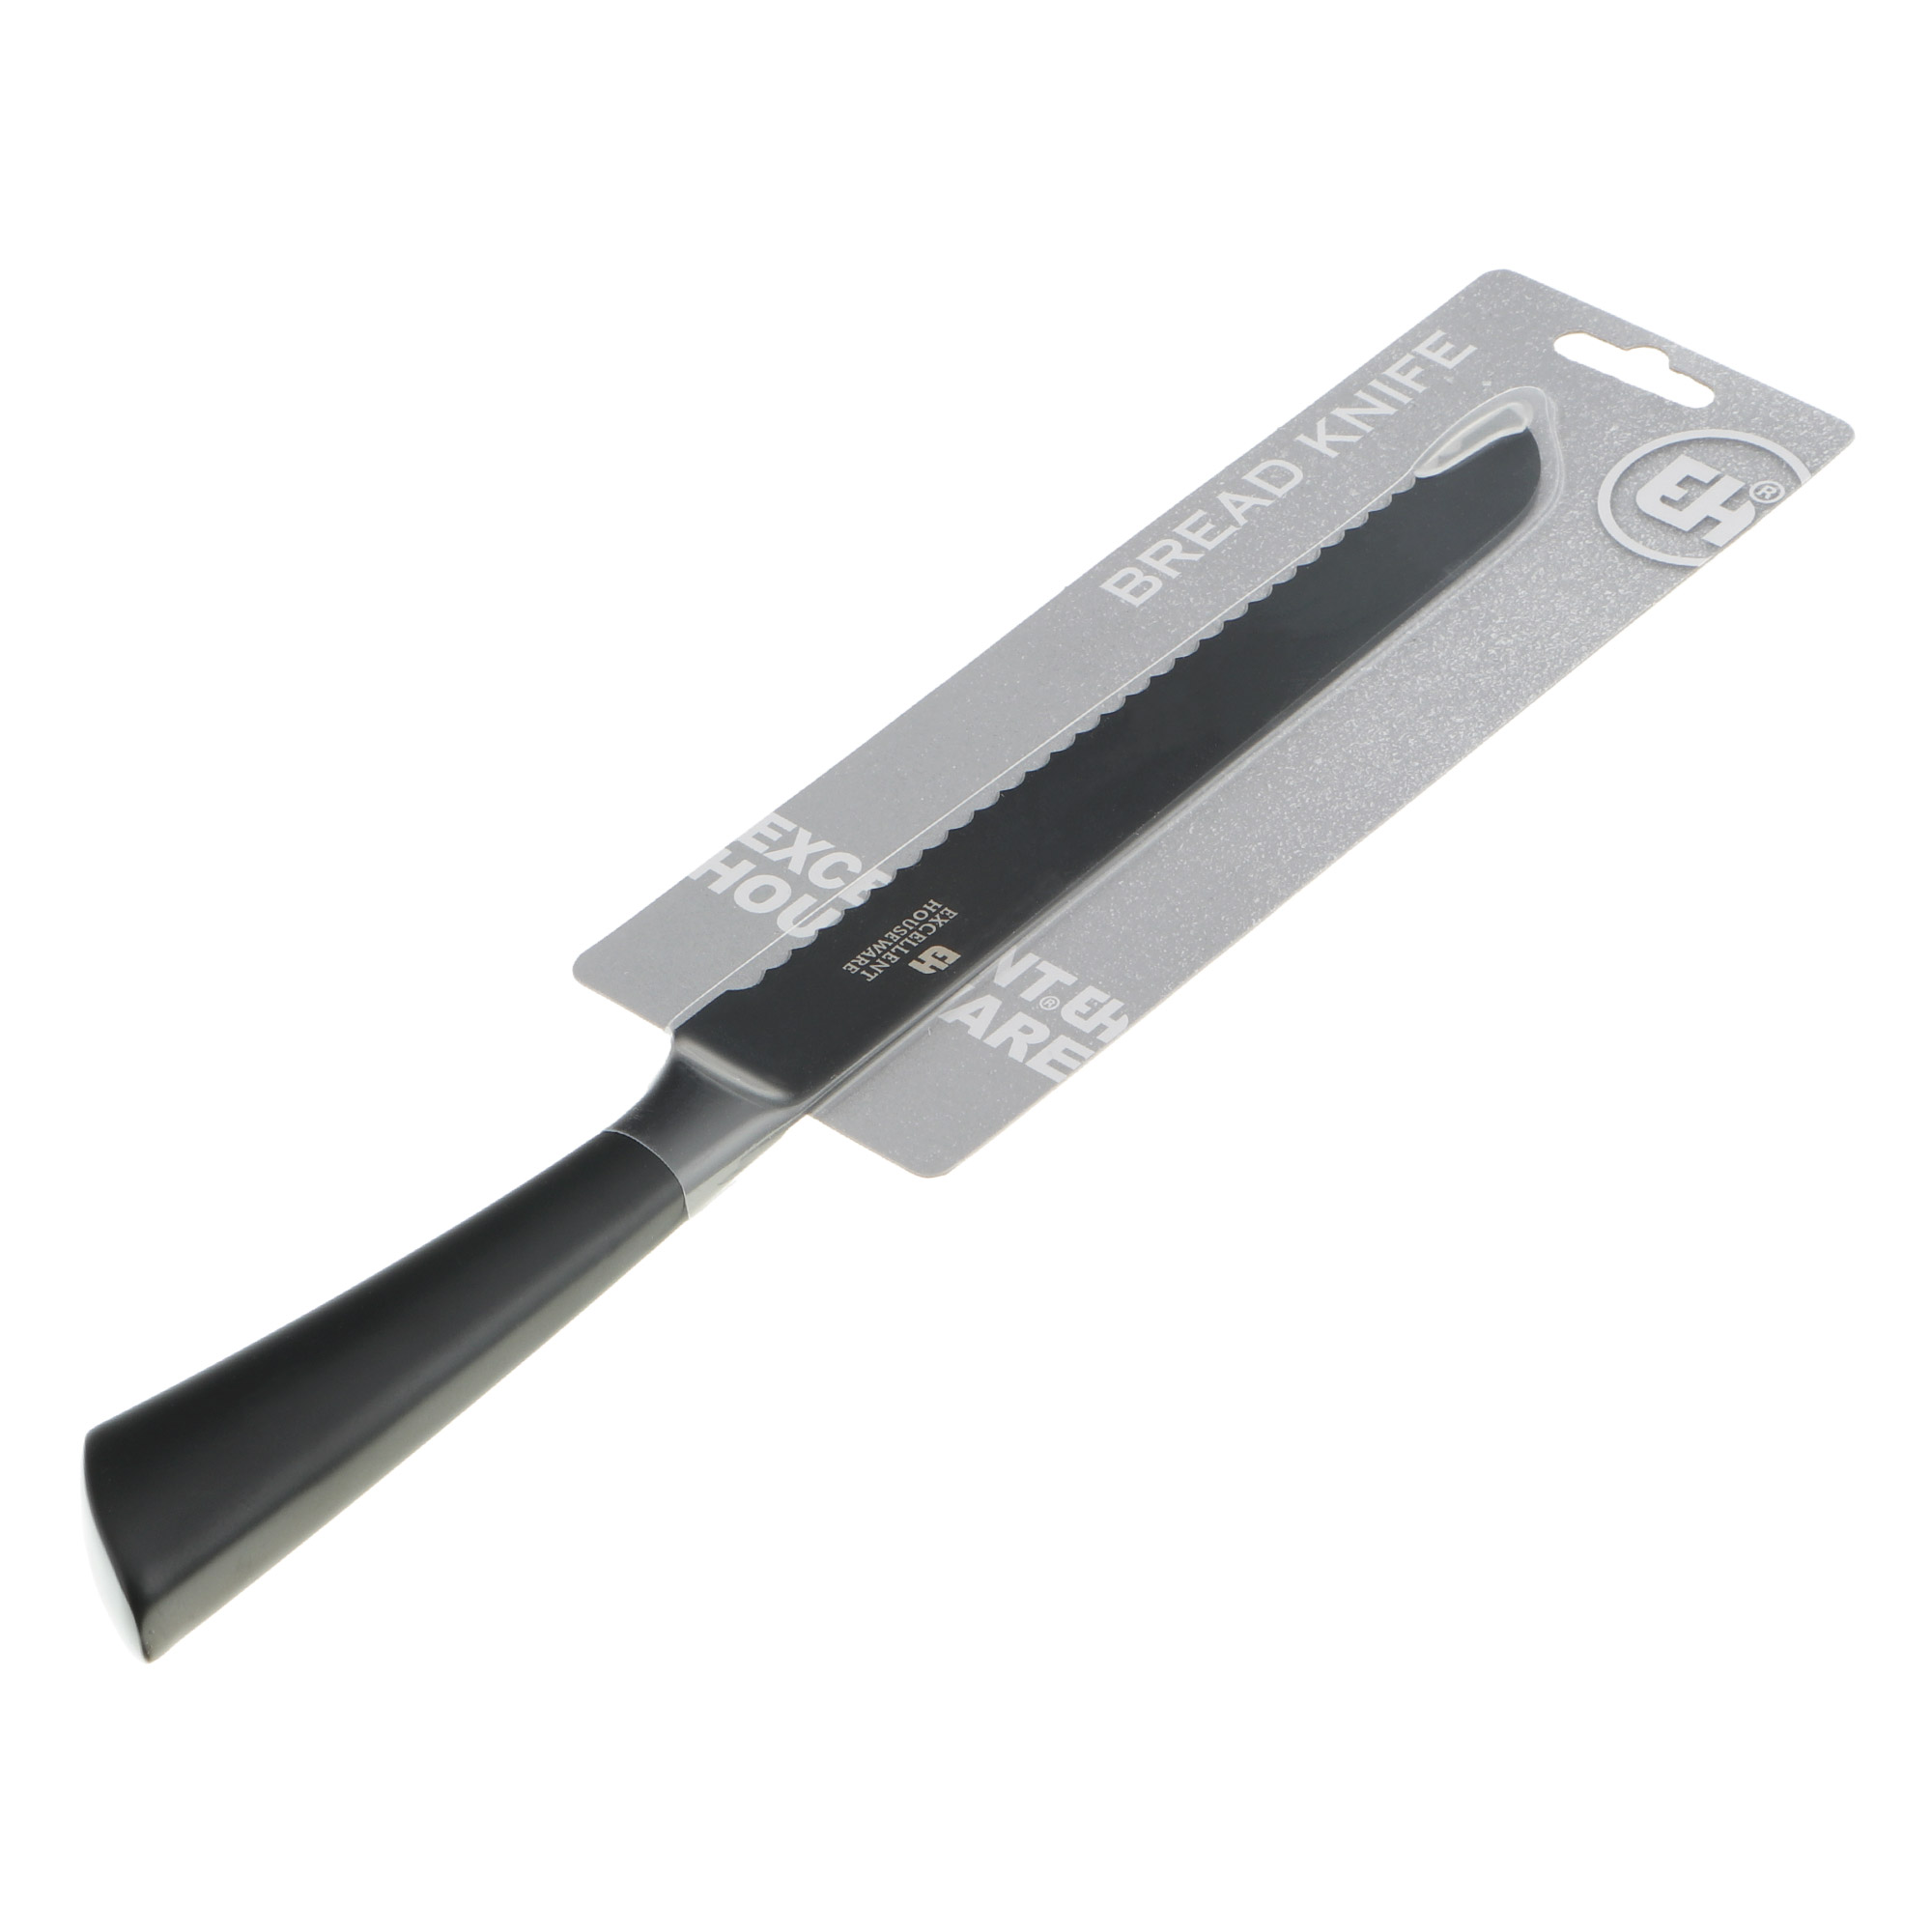 нож для хлеба brabantia 33 см Нож для хлеба Koopman tableware 33 см черный